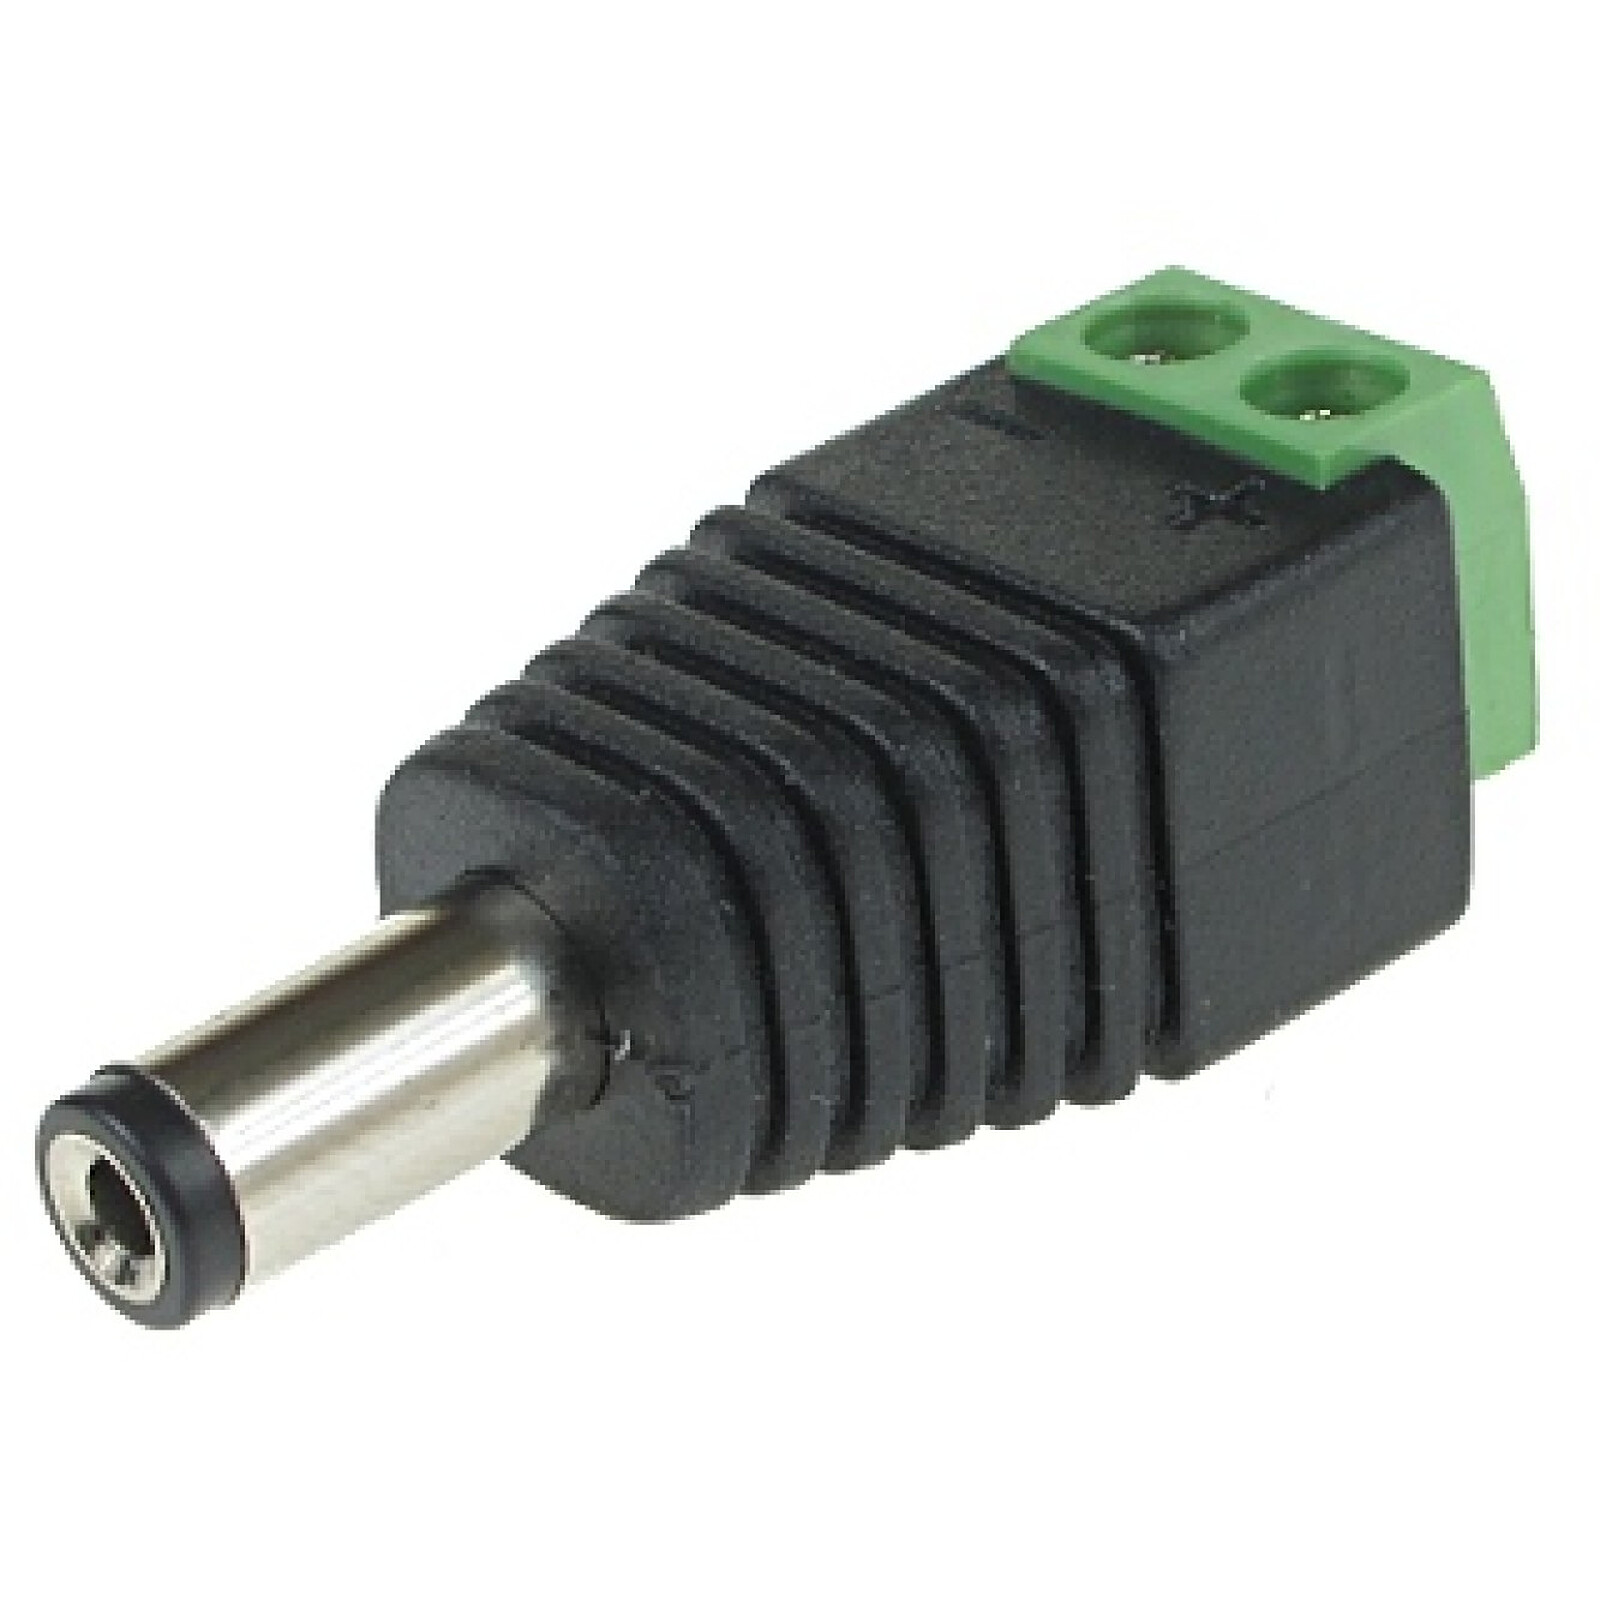 12V DC d'alimentation Connecteur Male/Femelle, DC Pigtail Cable